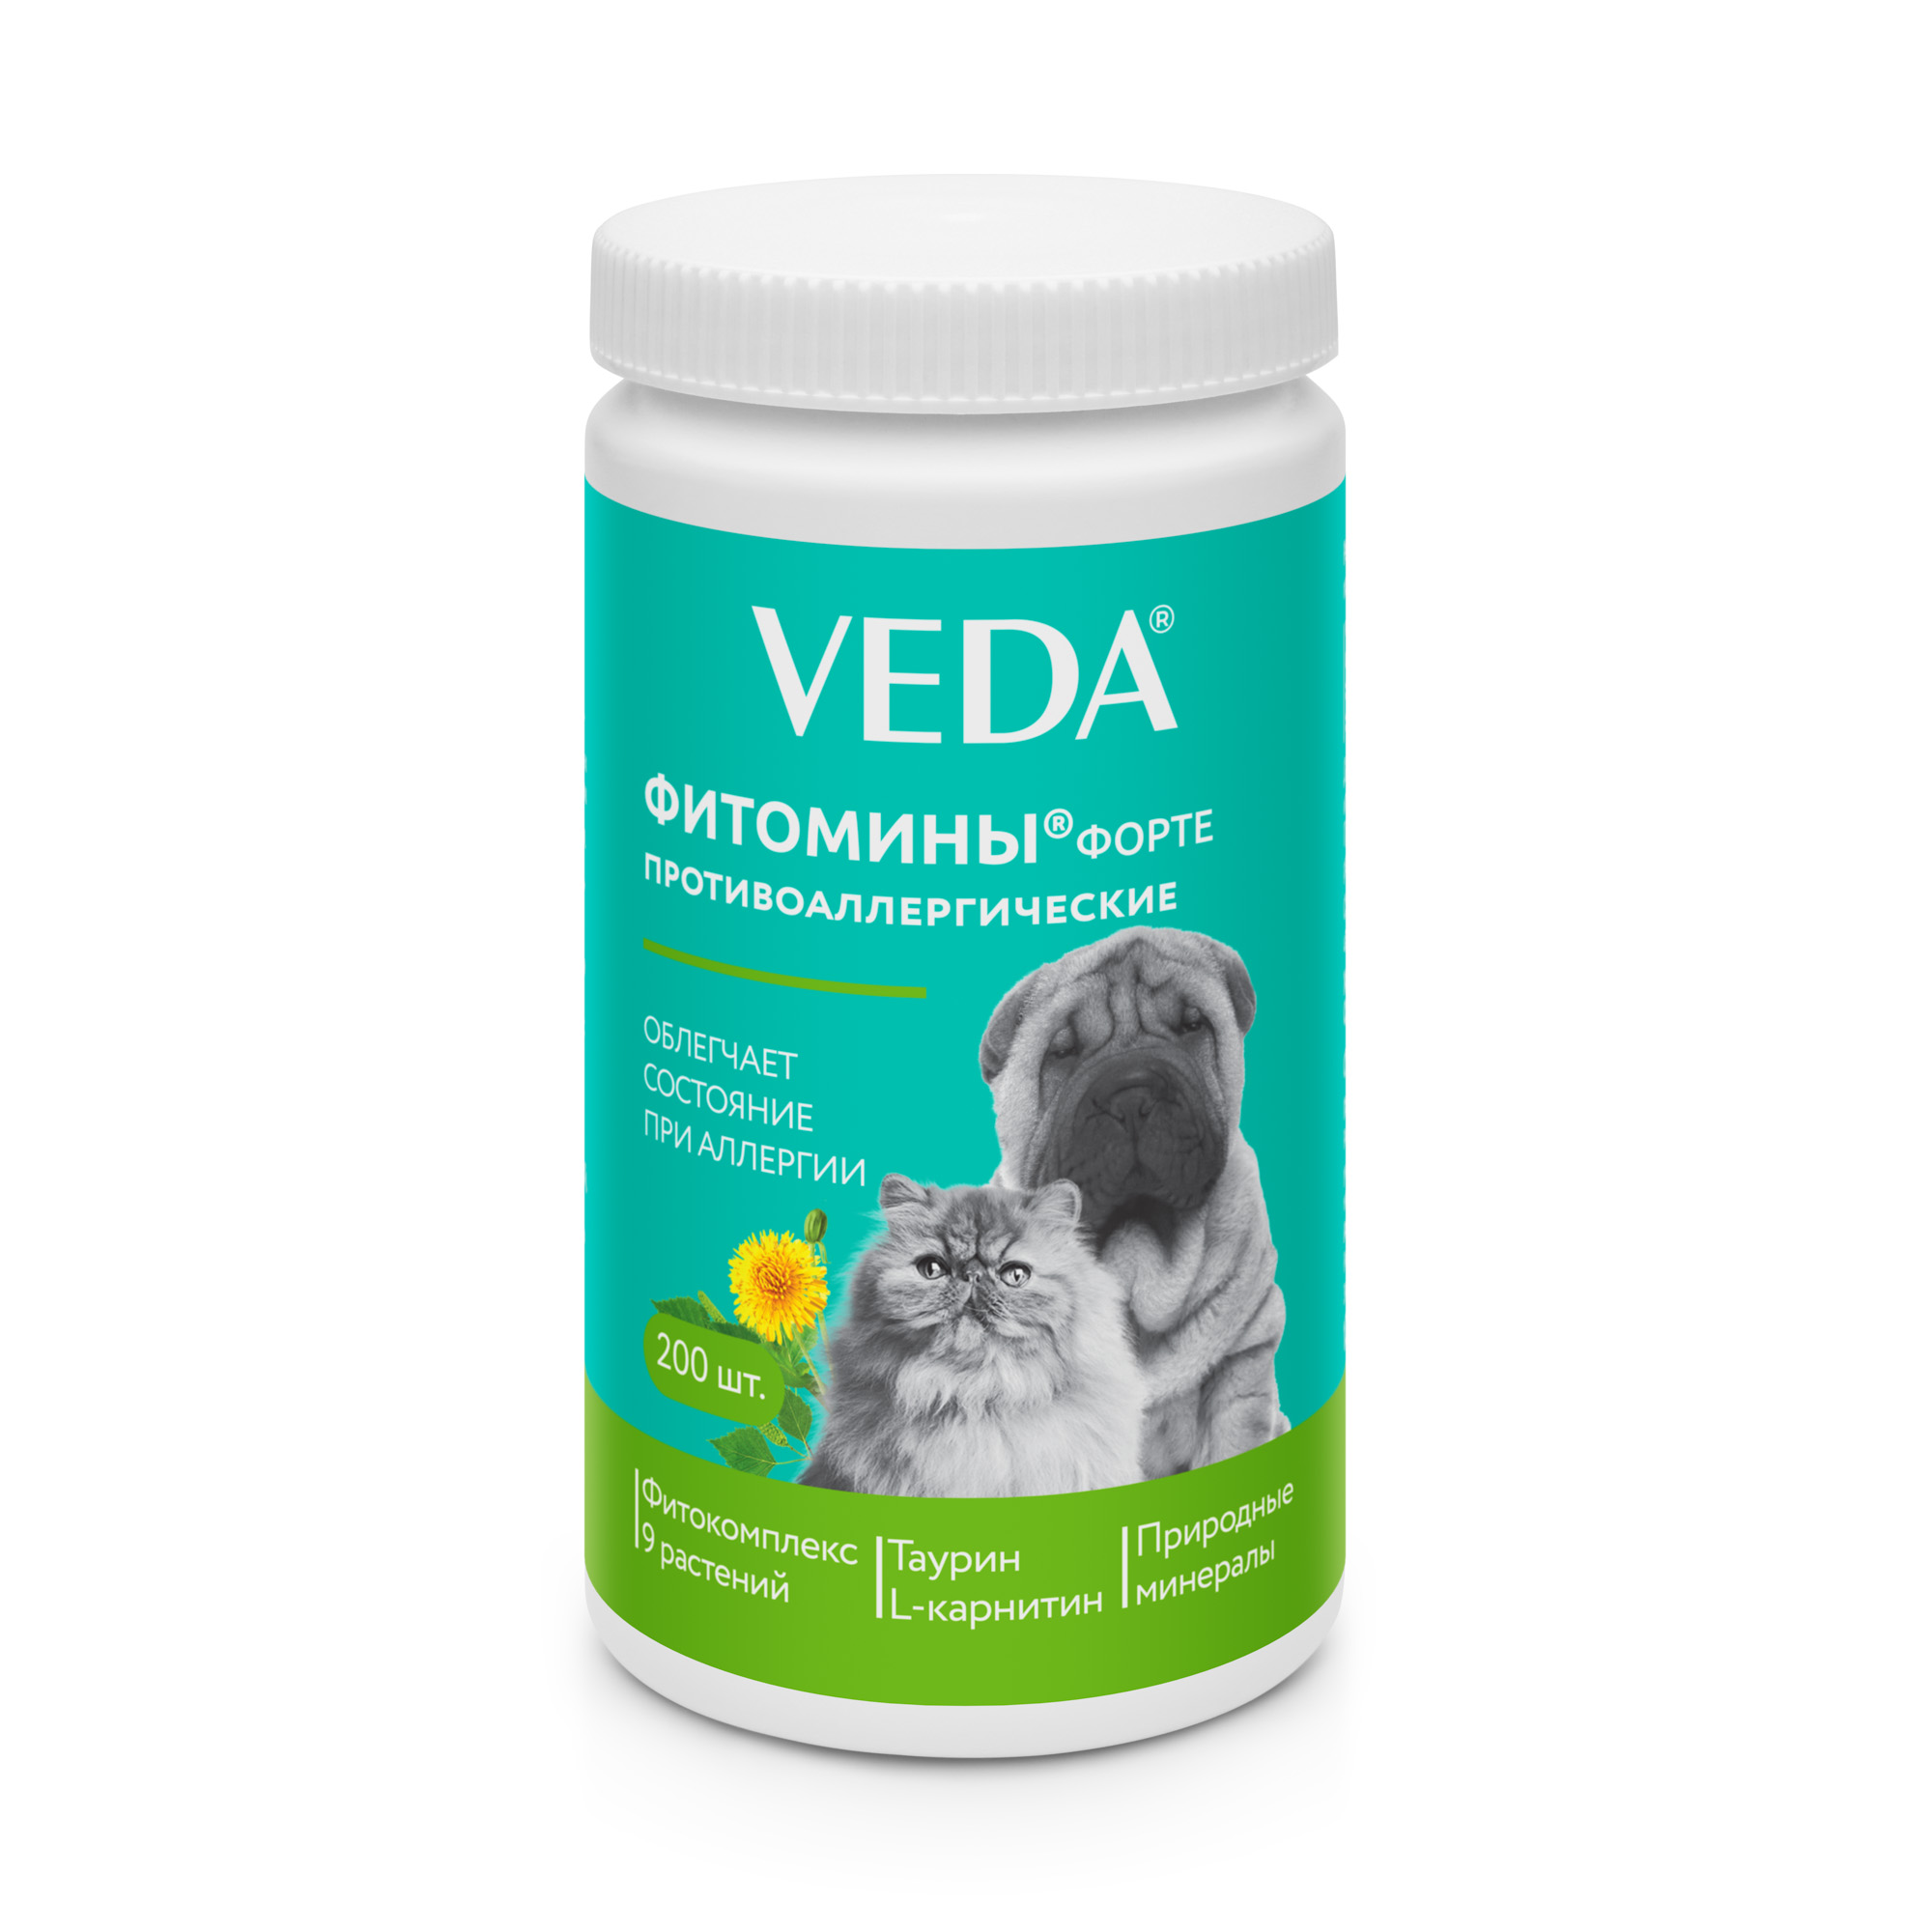 Фитомины для собак и кошек Veda, противоаллергические, 200 шт